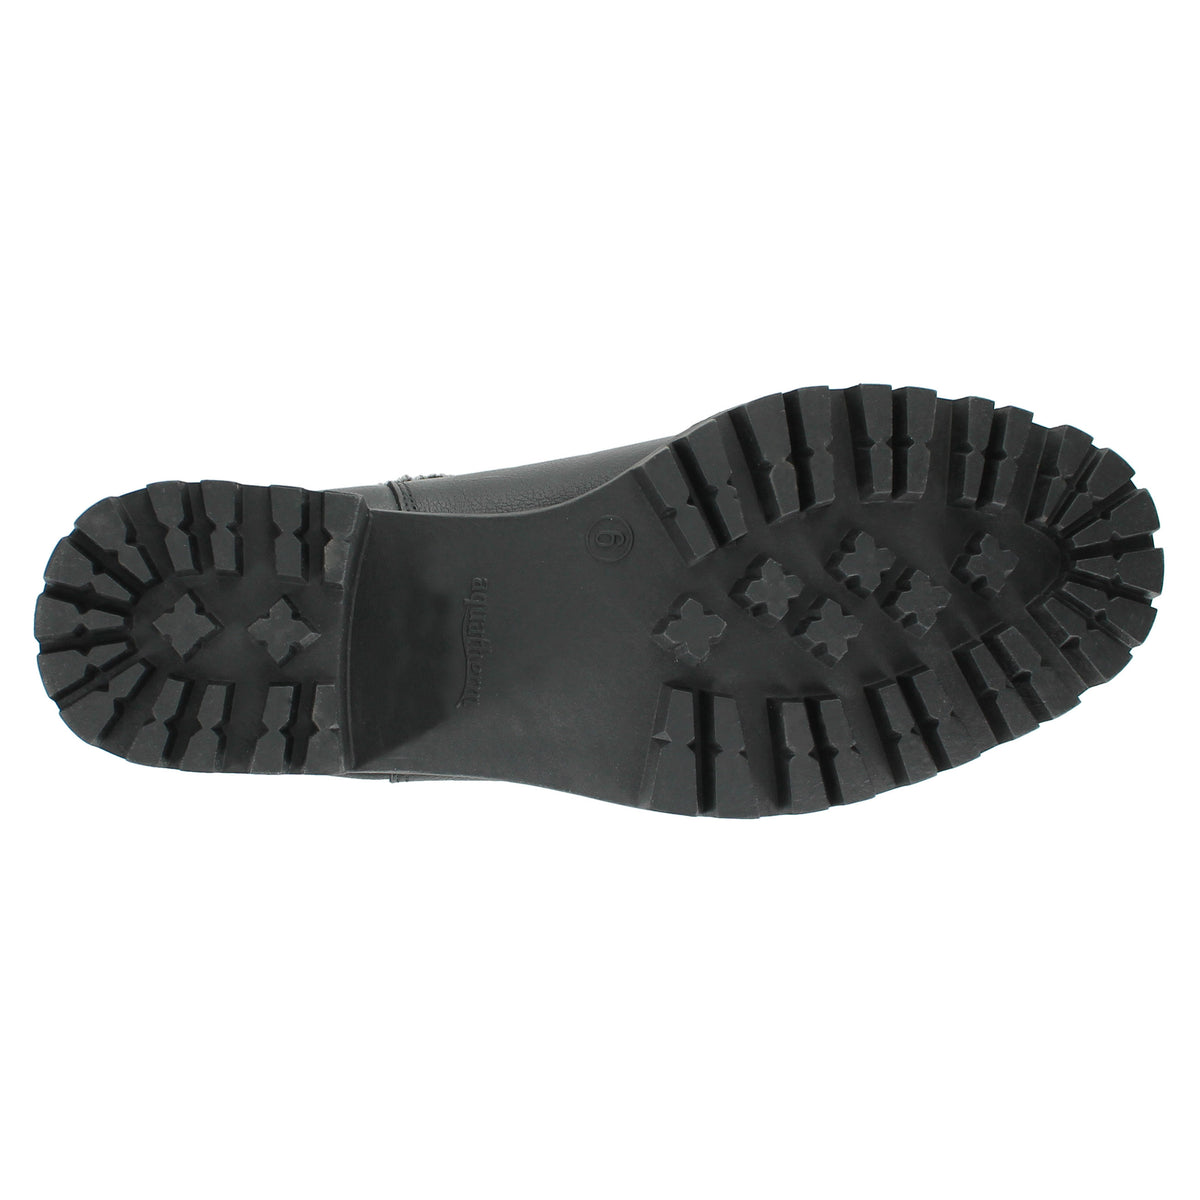 Aquatherm Canada Meena Black Shoes